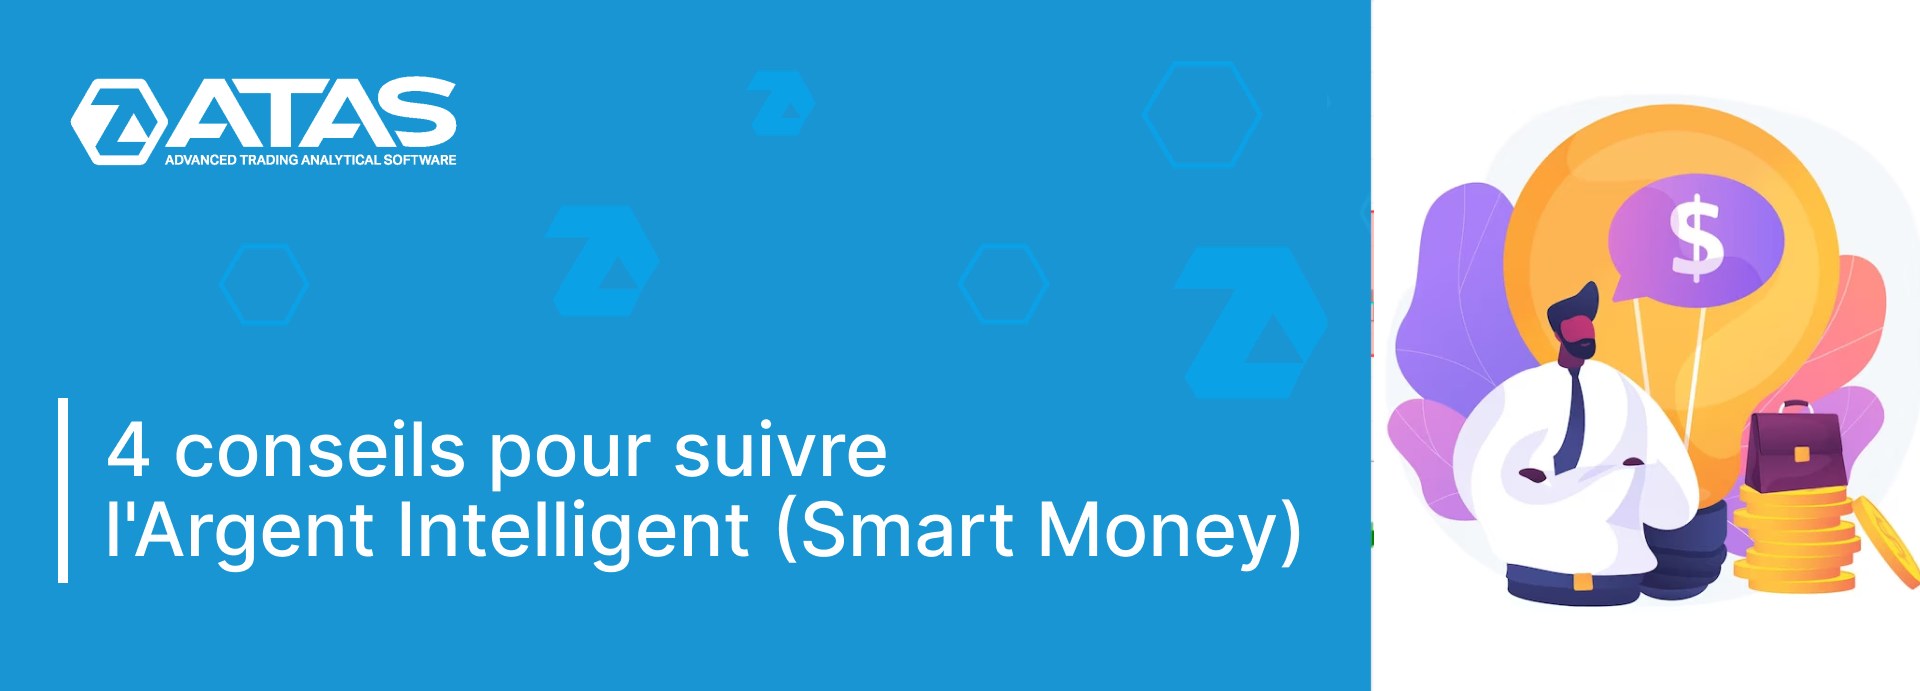 4 conseils pour suivre Smart Money (l'Argent Intelligent)